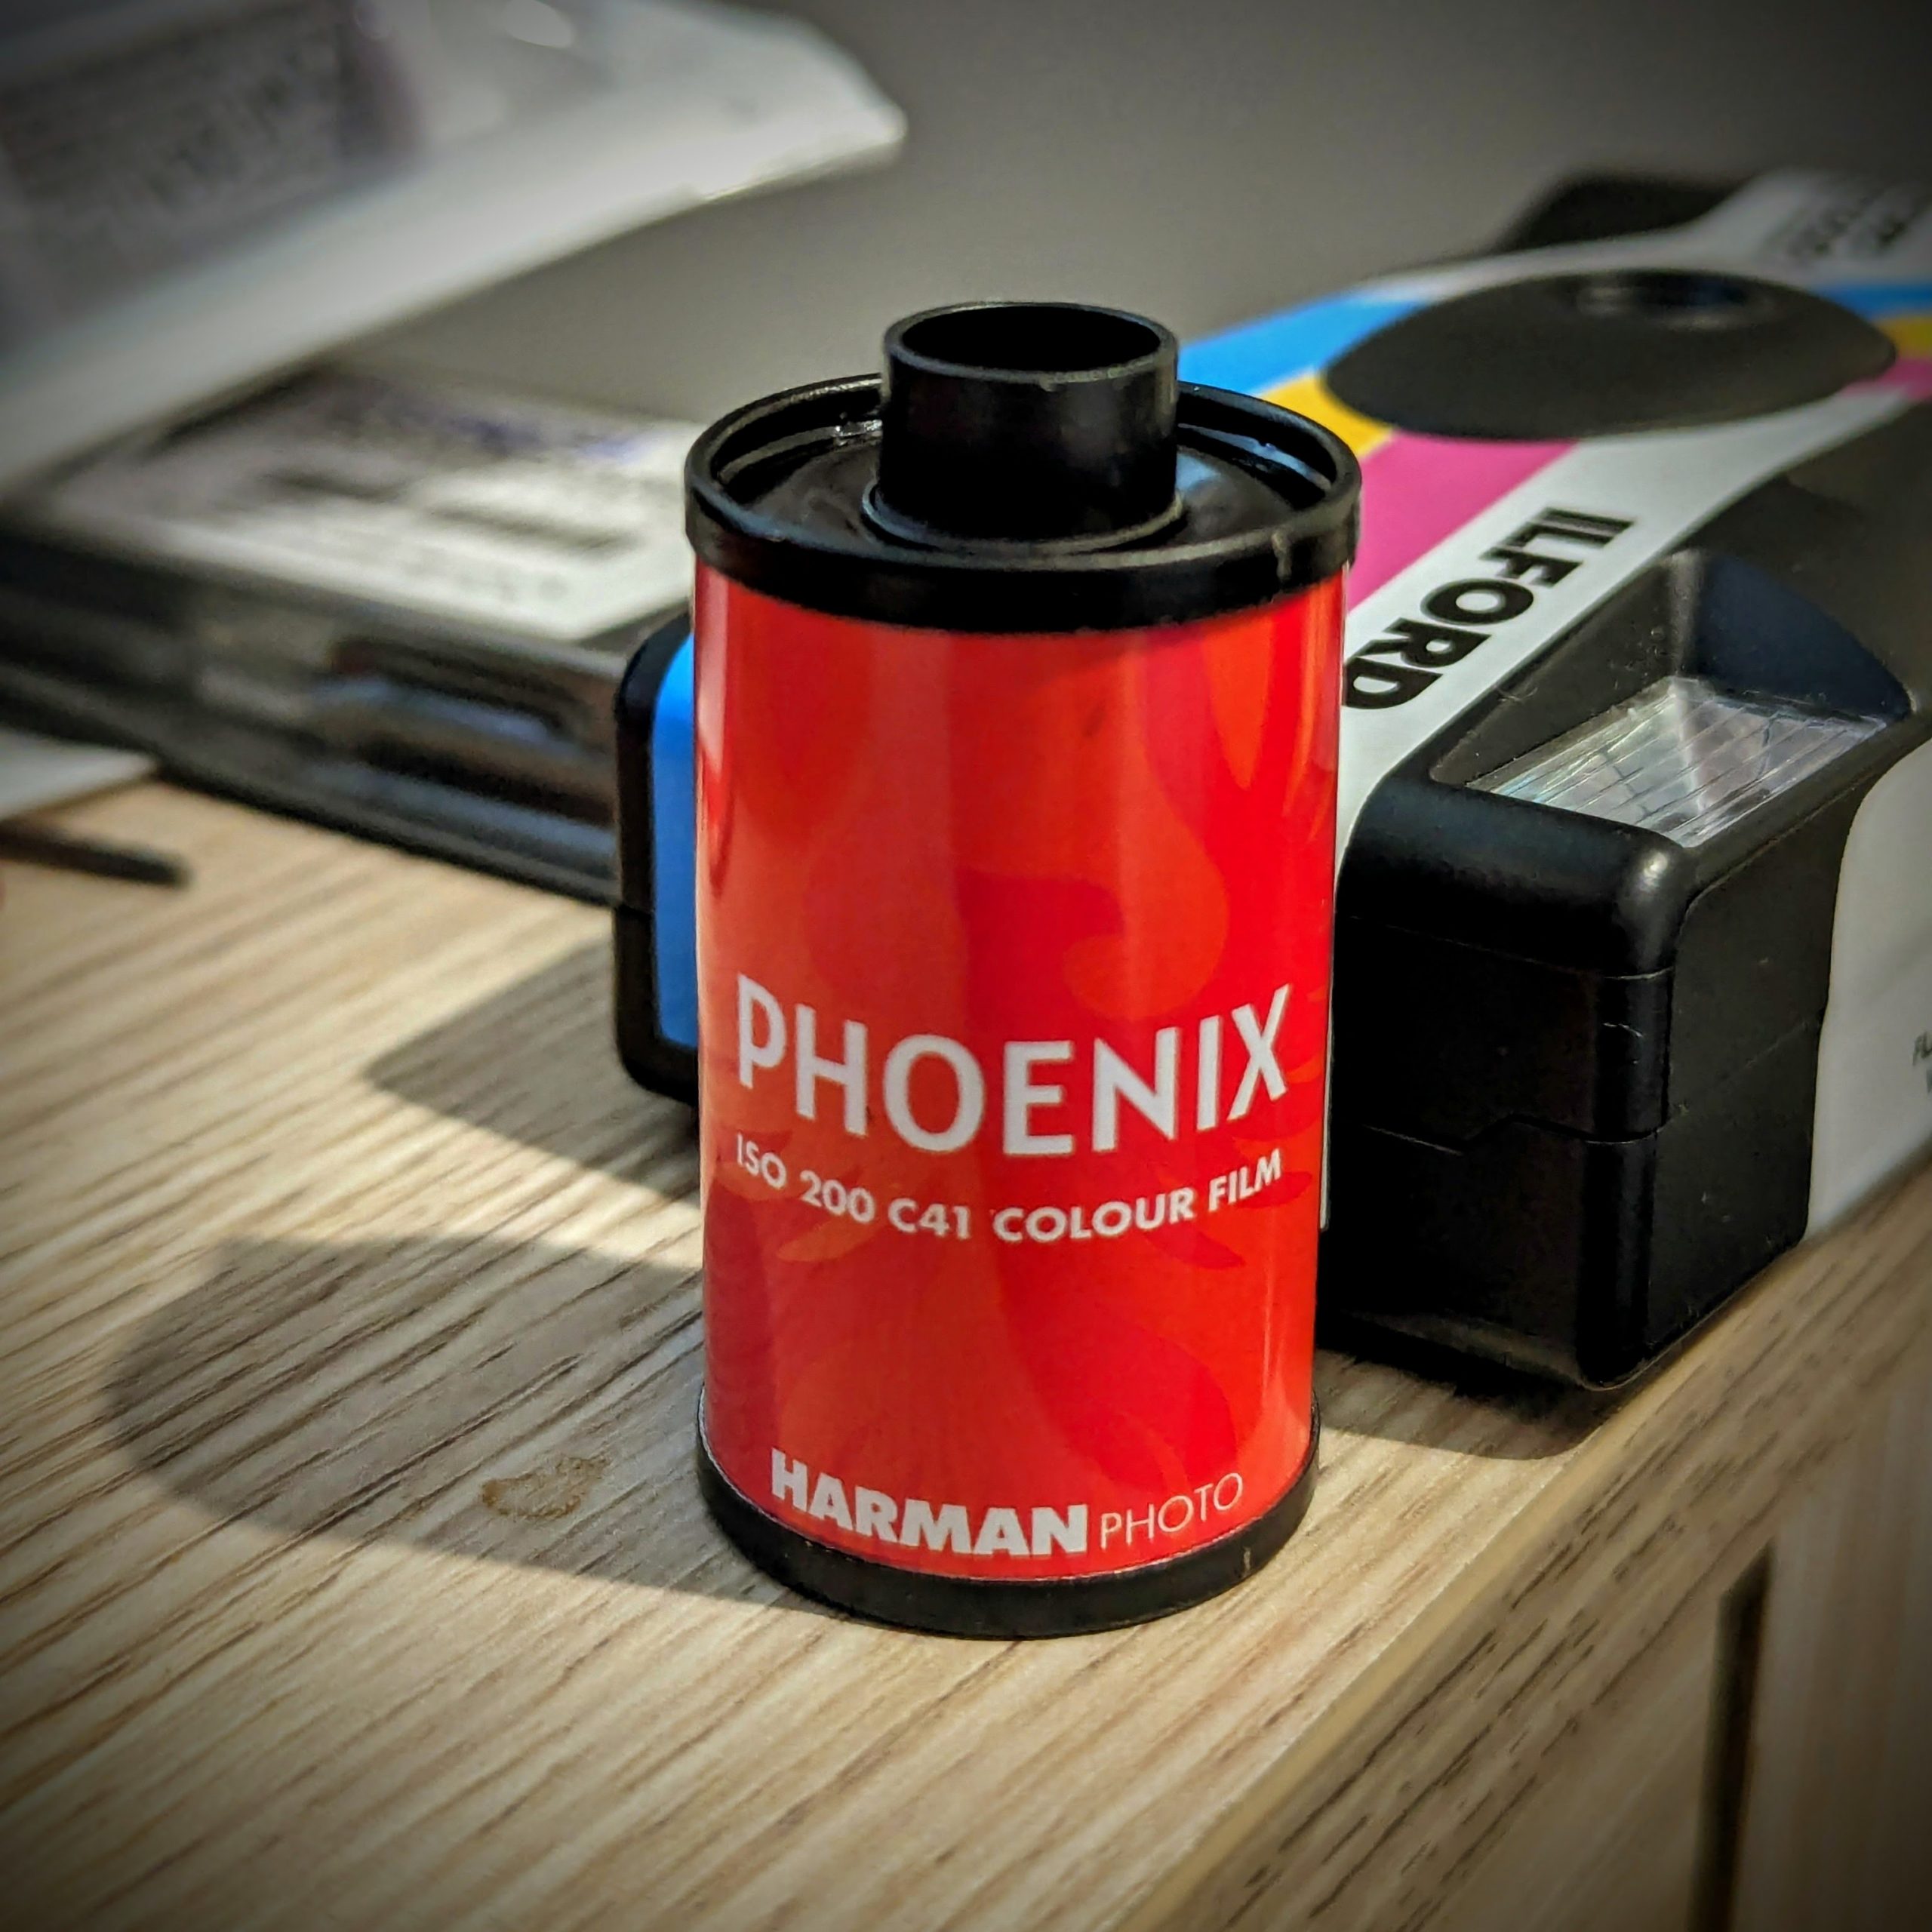 Harman Phoenix, the new 200 ISO C-41 colour film